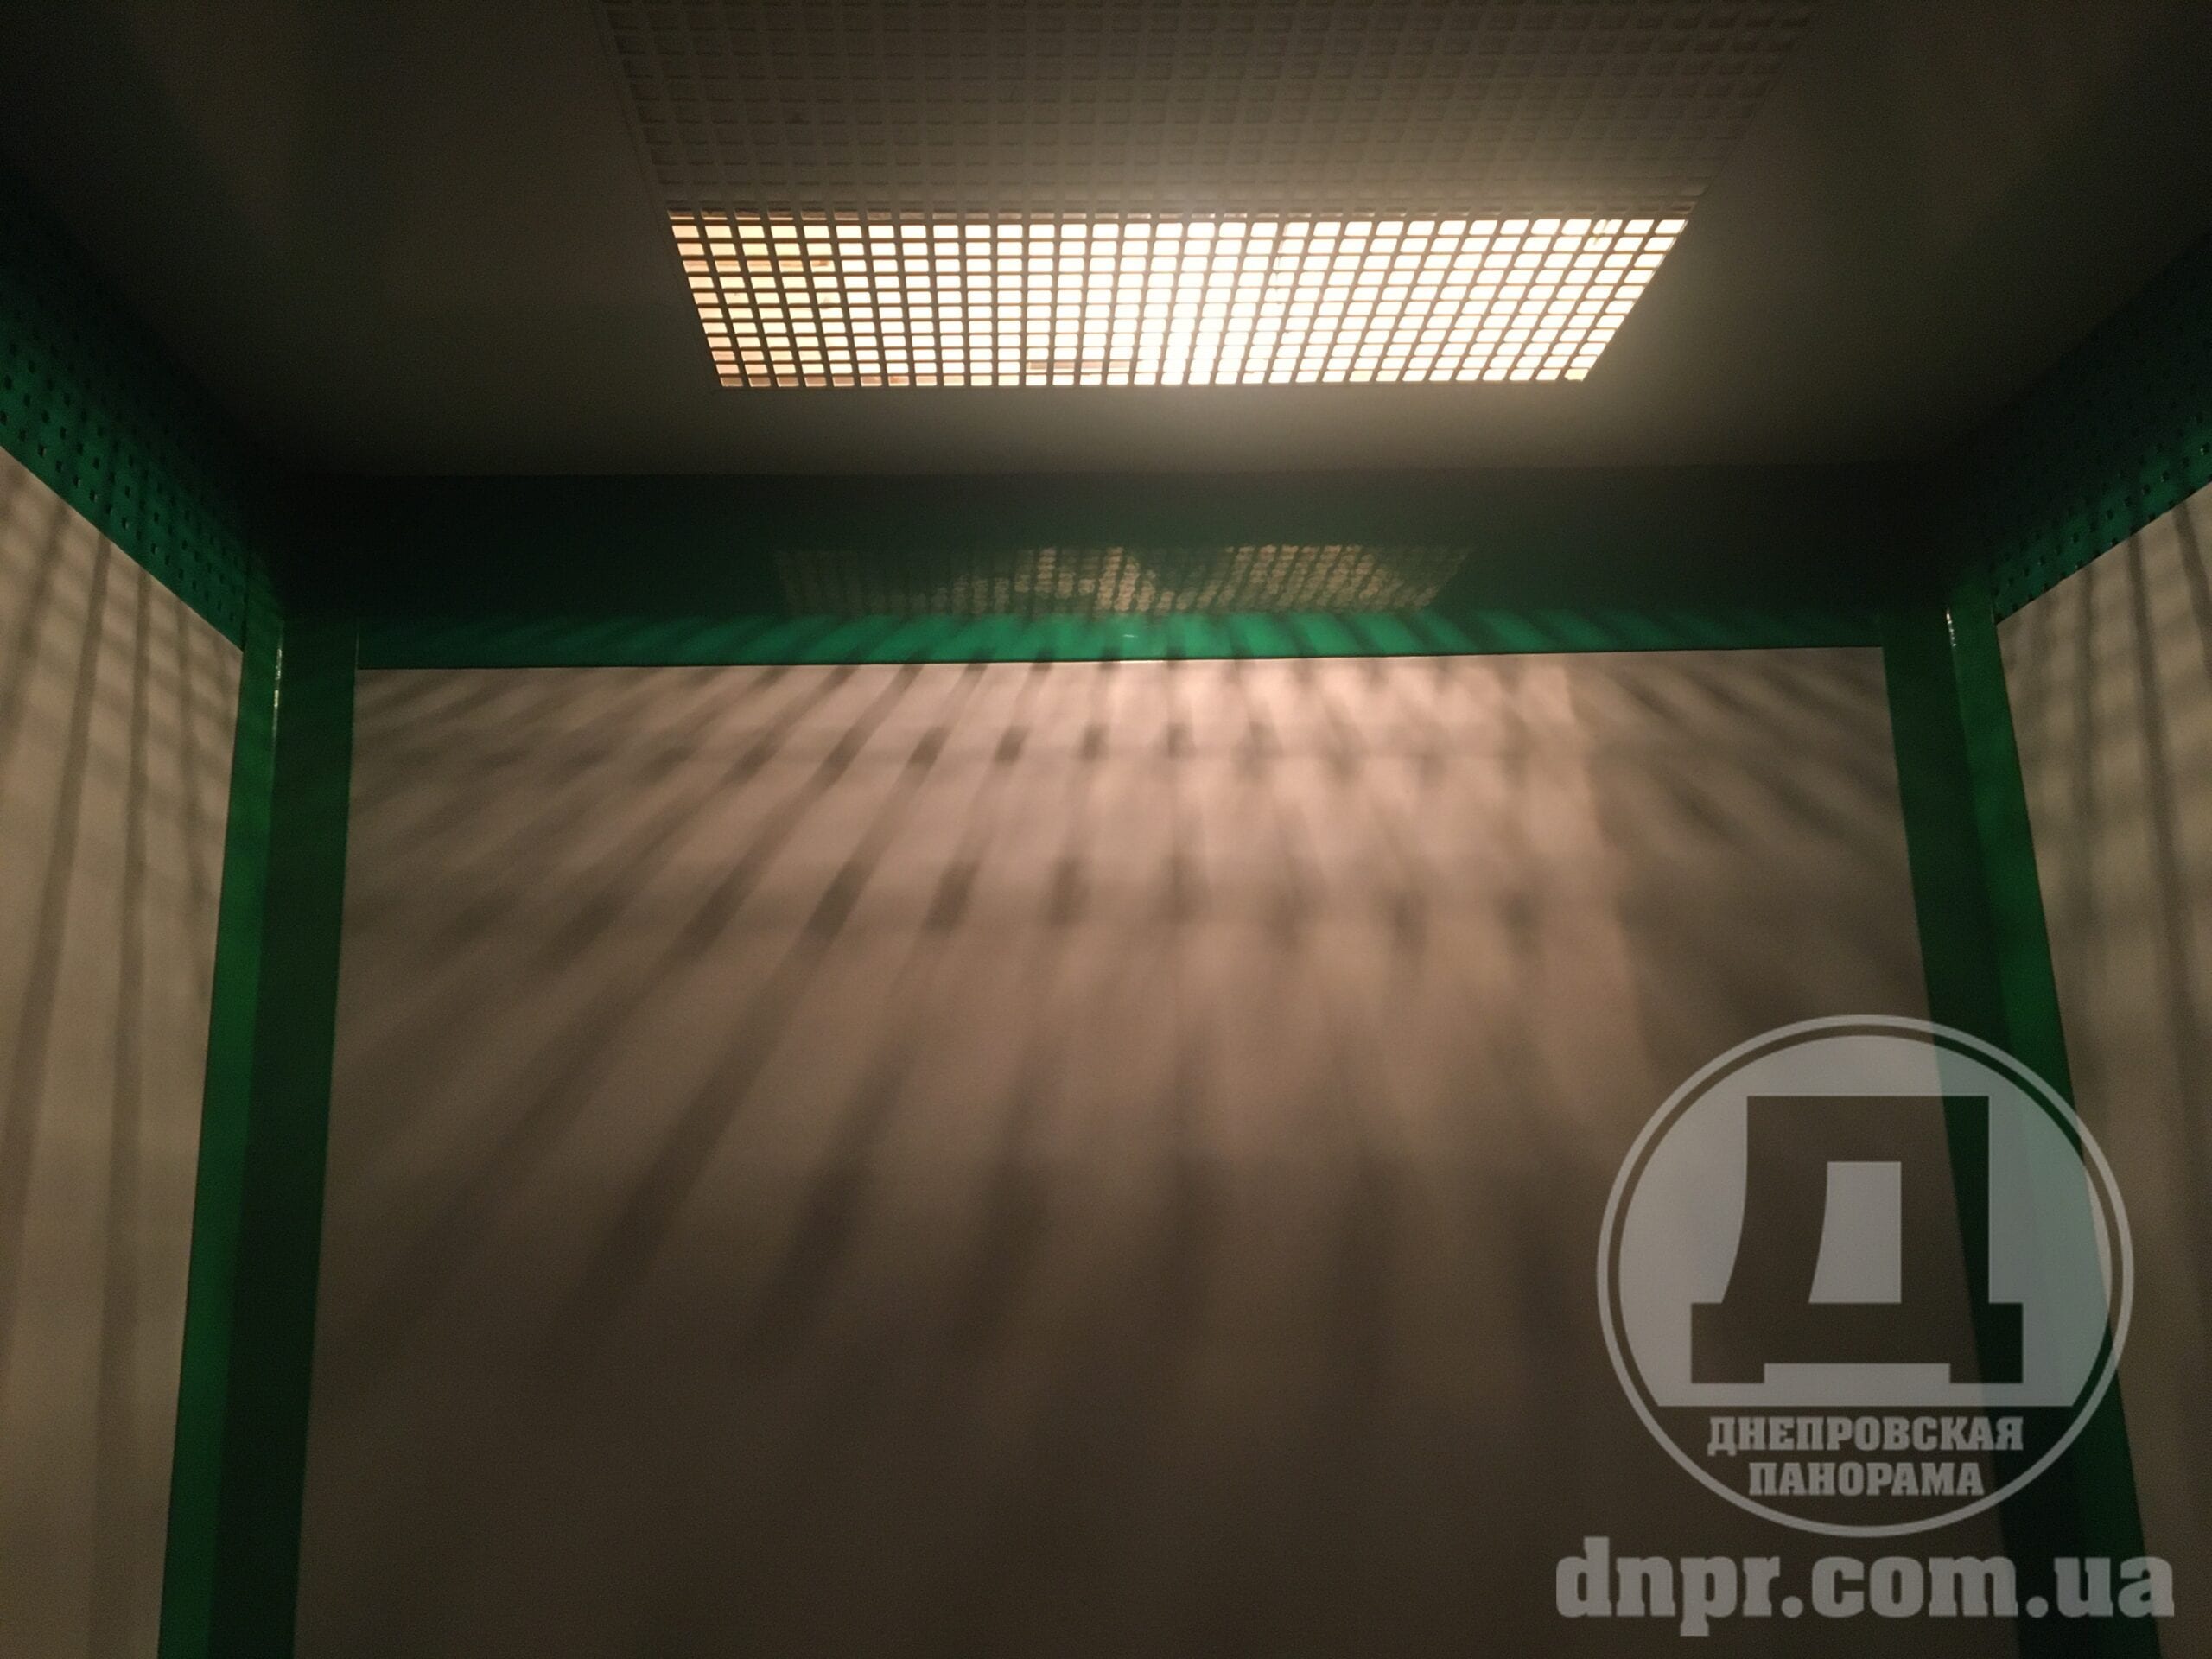 Впервые за много лет: в днепровской многоэтажке отремонтировали лифт (Фото/Видео)